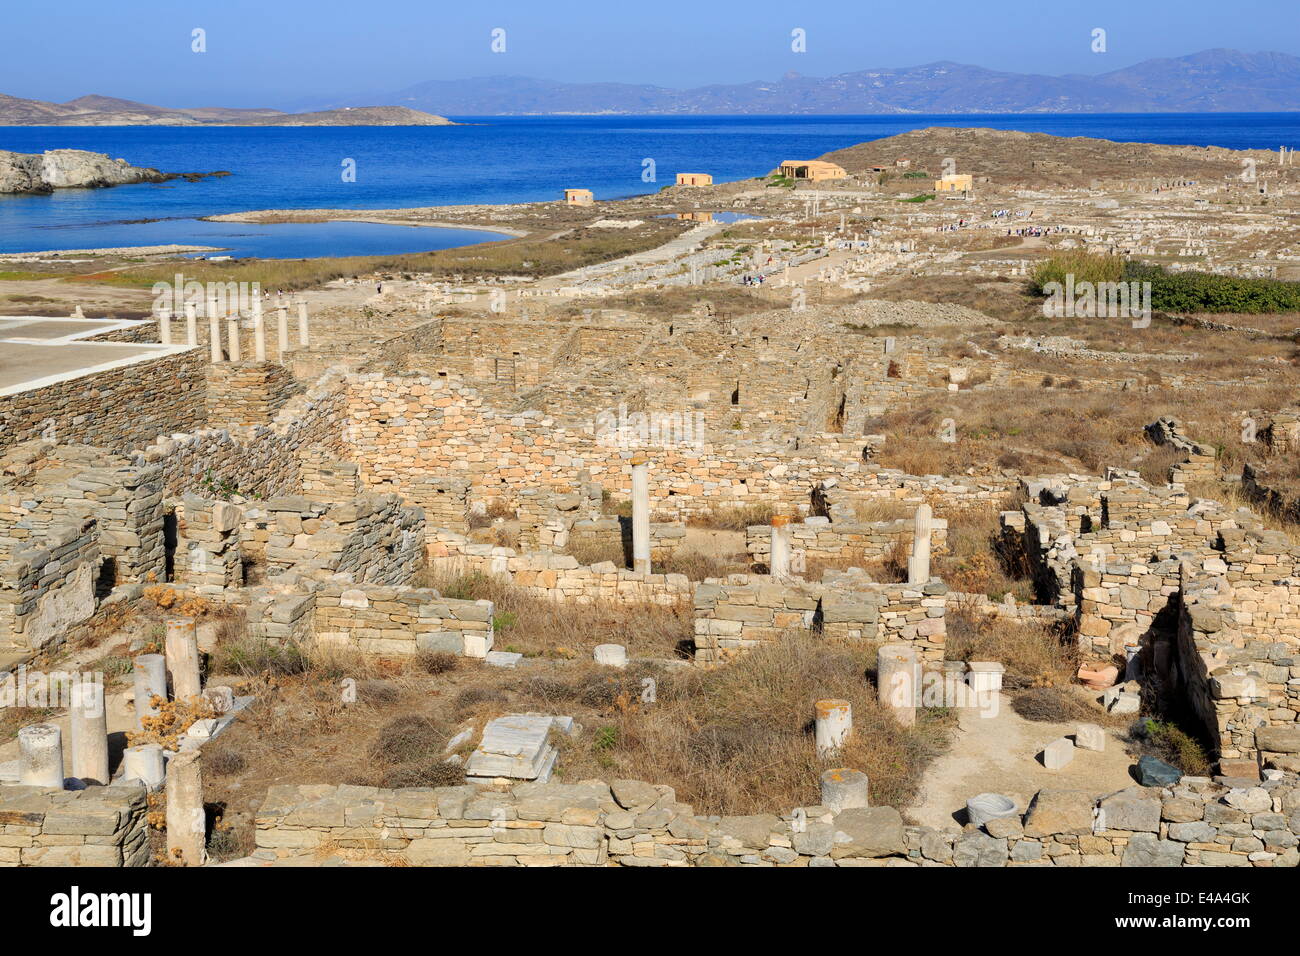 Ruines archéologiques de Delos, UNESCO World Heritage Site, Delos, Cyclades, îles grecques, Grèce, Europe Banque D'Images